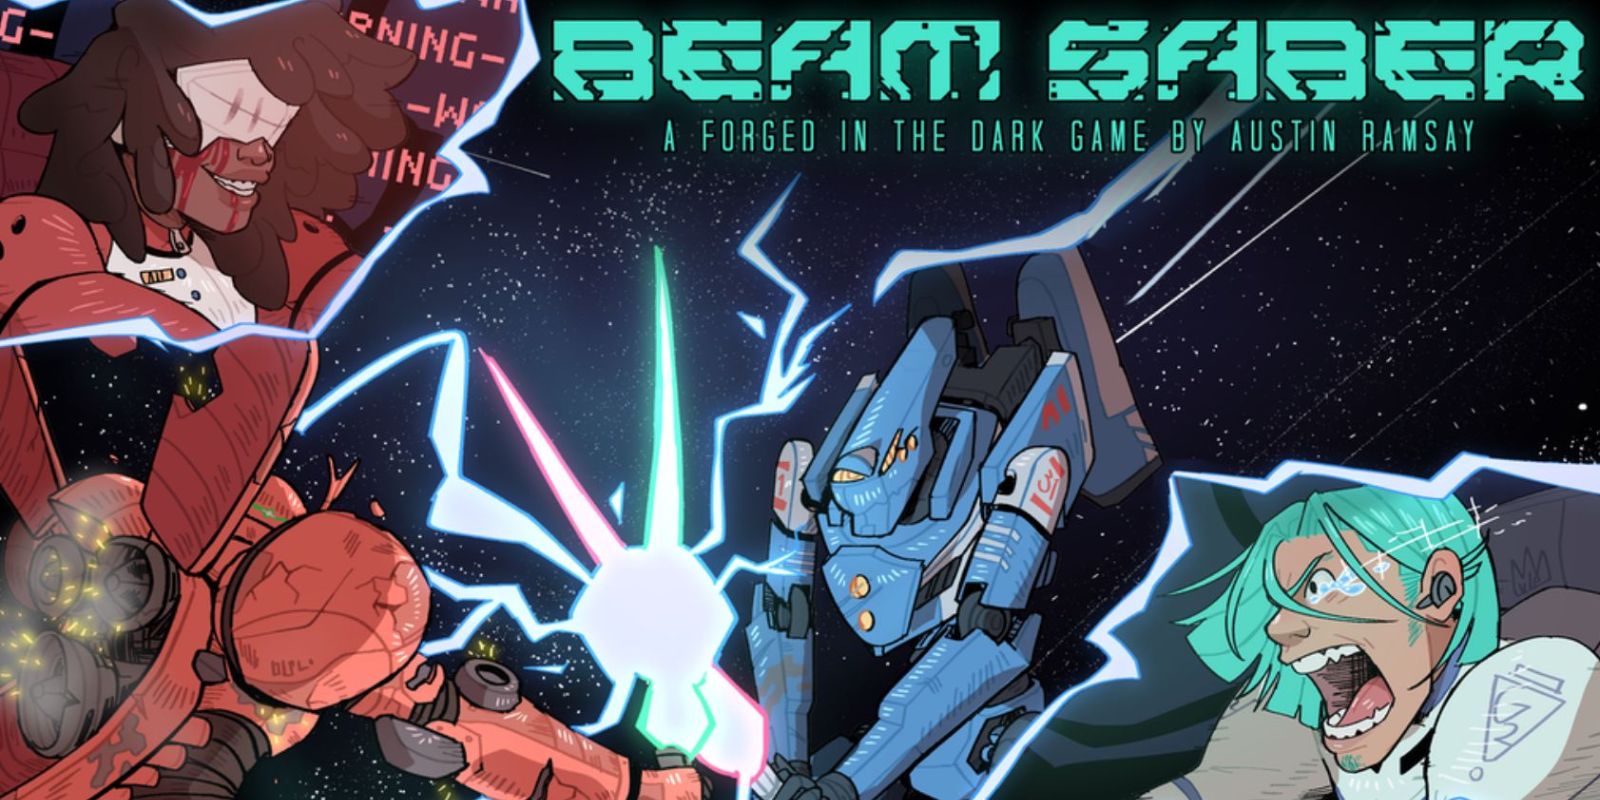 Imagens promocionais mostrando personagens e mechs do RPG Beam Saber de mesa lutando em uma batalha.  O texto abaixo do título do jogo diz: 